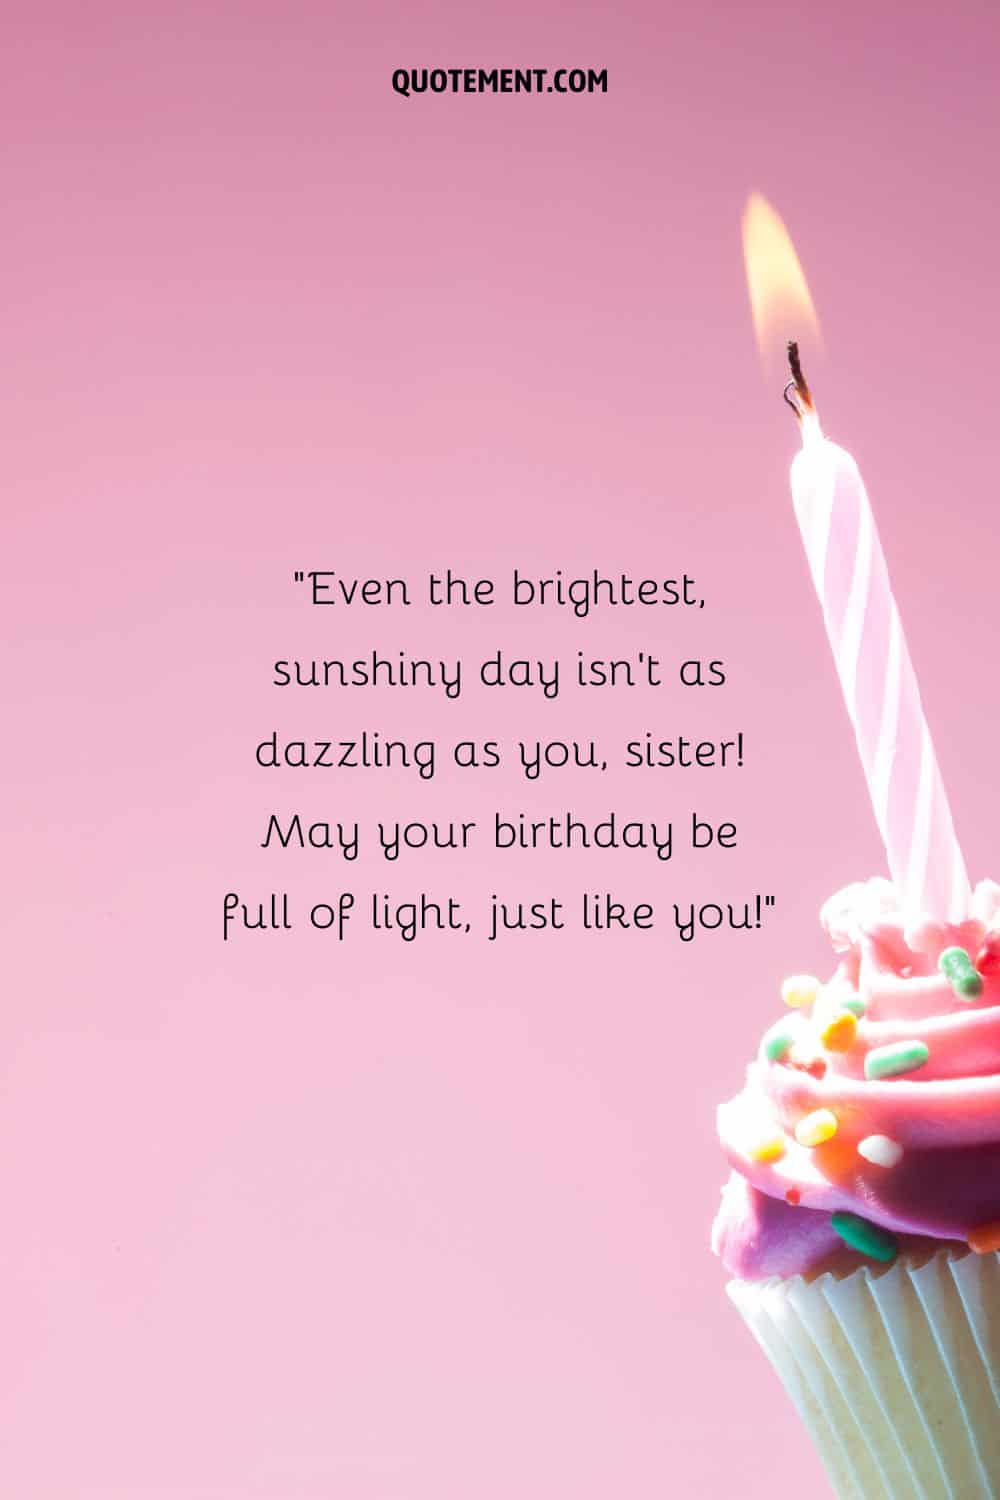 una magdalena de cumpleaños que representa el deseo de cumpleaños de una hermana de 72 años